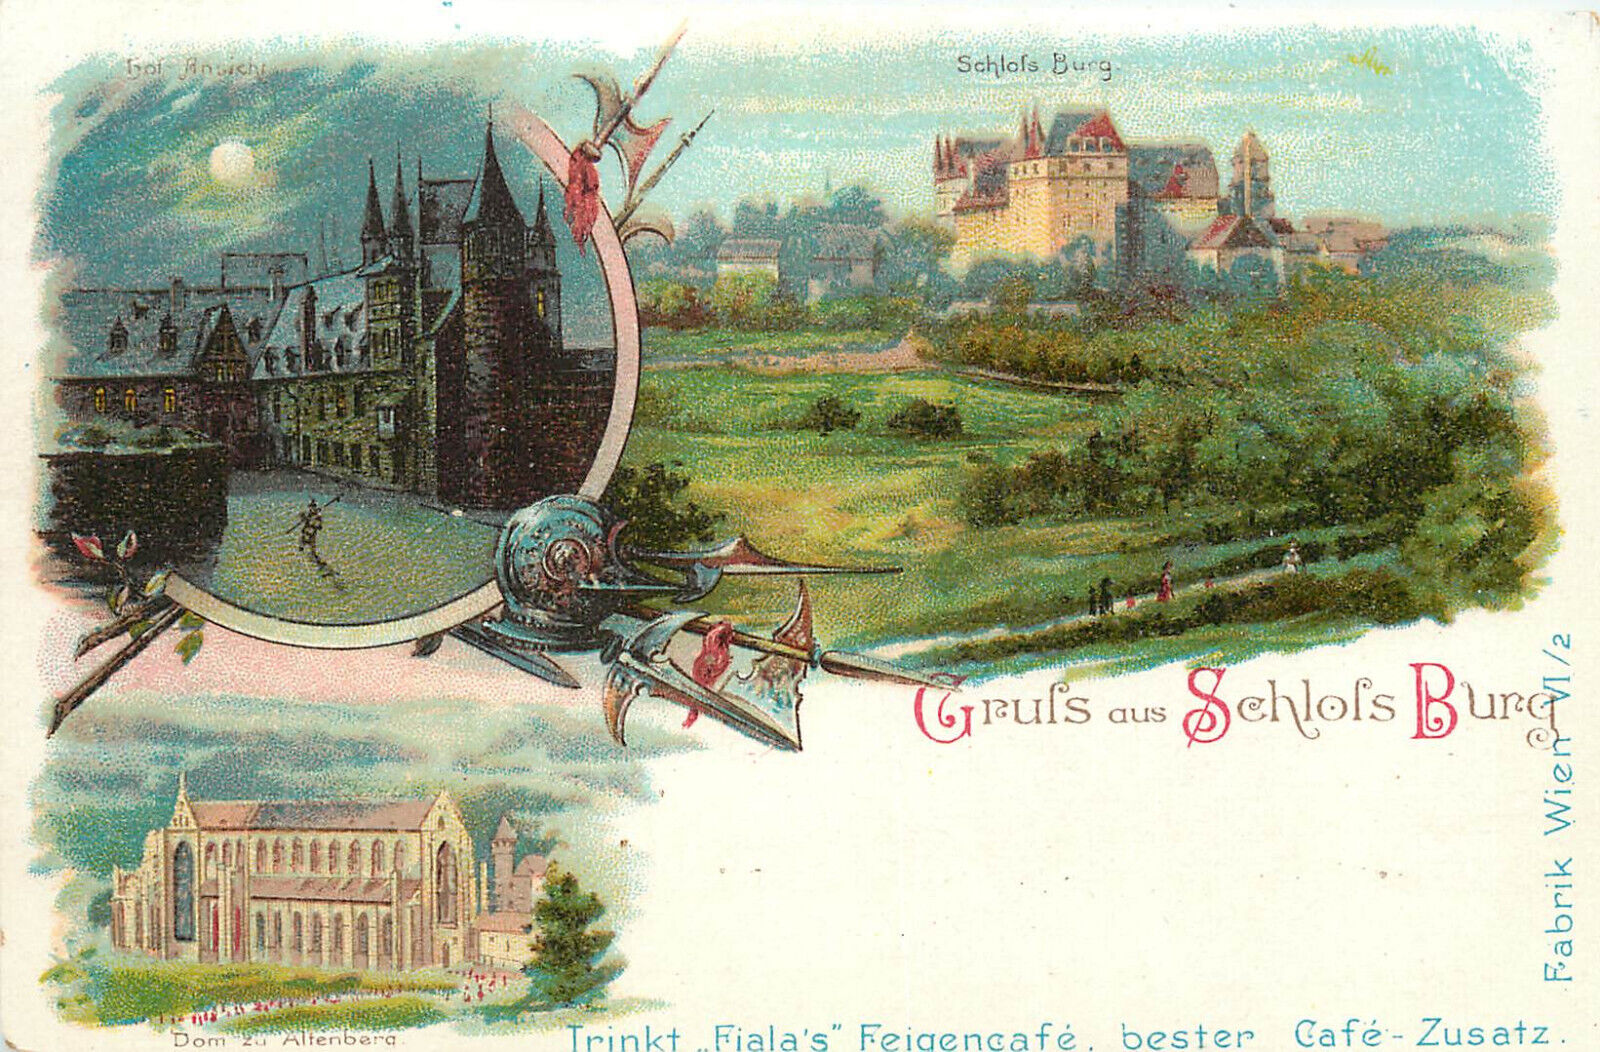 Postcard Trink Fialas Feigencafe Cafe zusatz Gruss Aus Schsols Burg Schlossburg